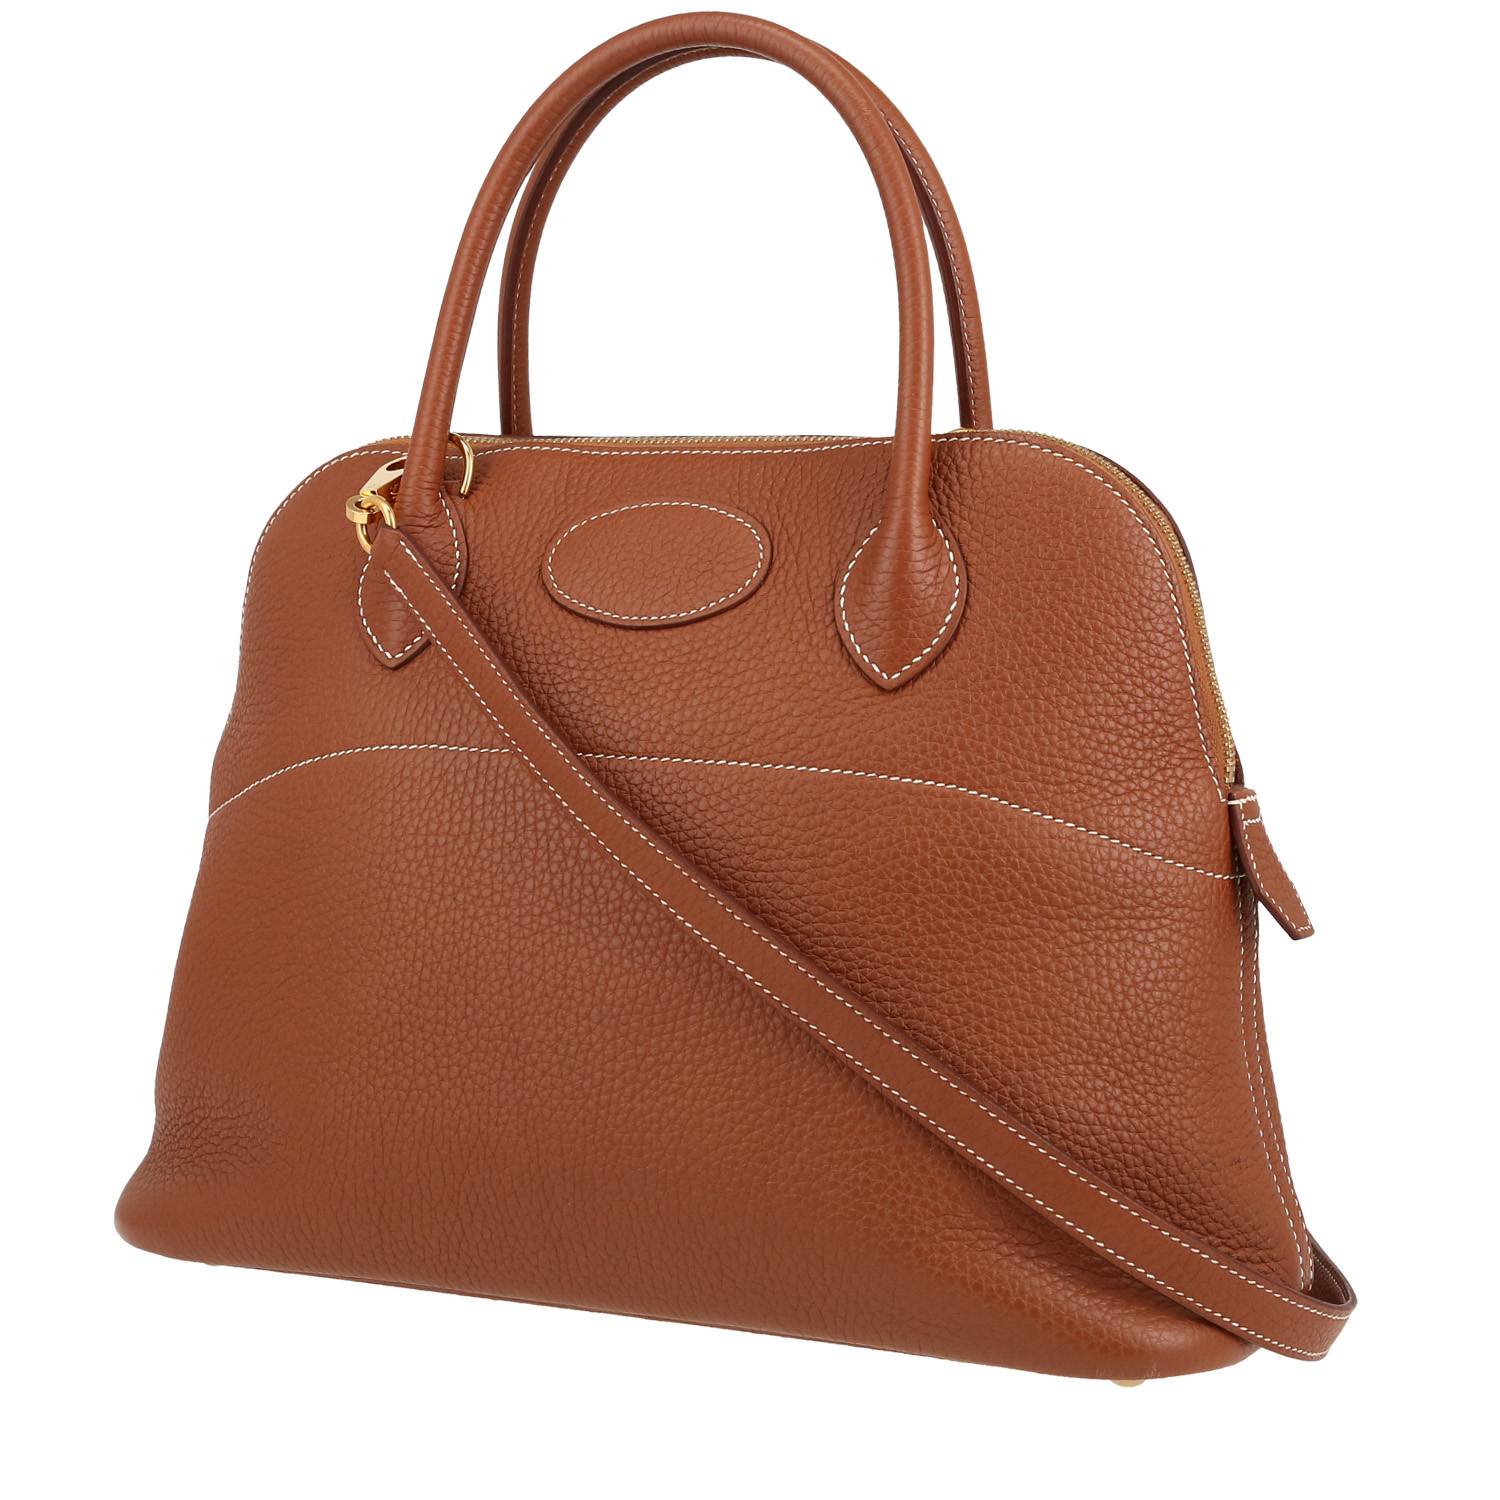 Bolide 31 cm Handbag In Togo Leather